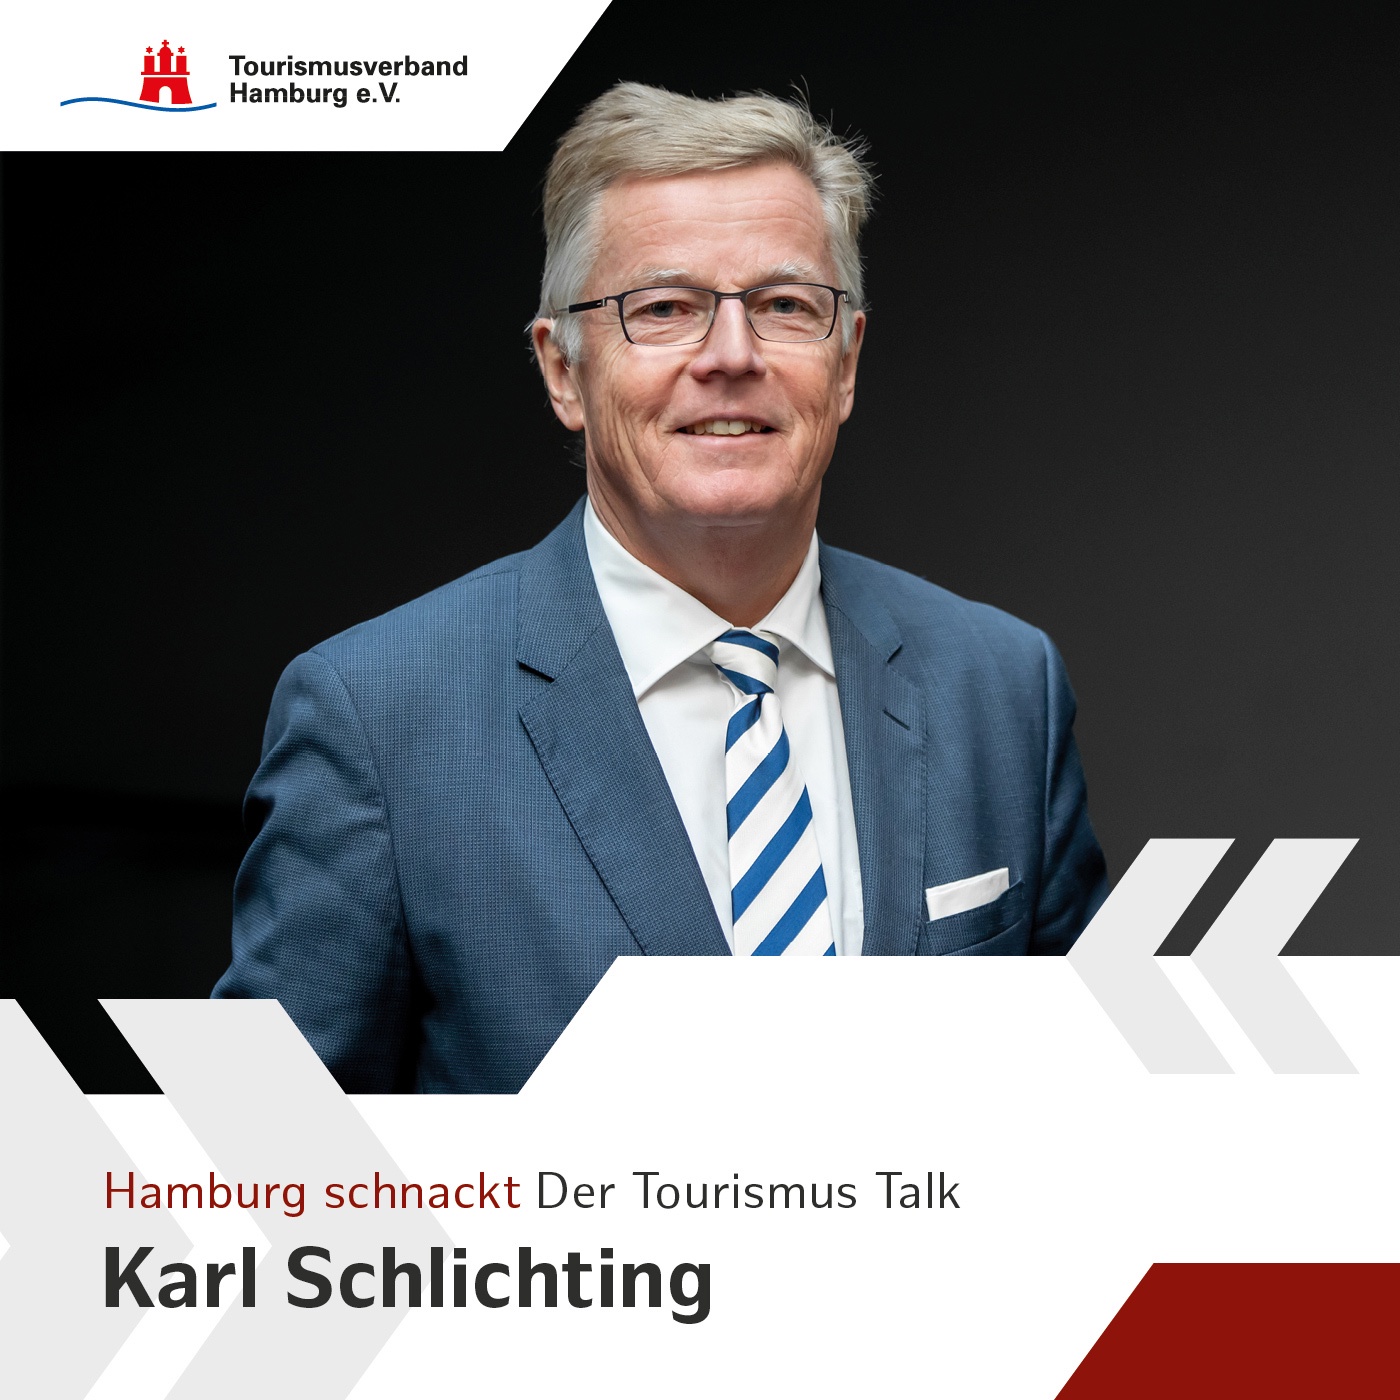 Hamburg schnackt - mit Carl Schlichting, 2. Stellvertretender Vorsitzender des TVH und Privathotelier